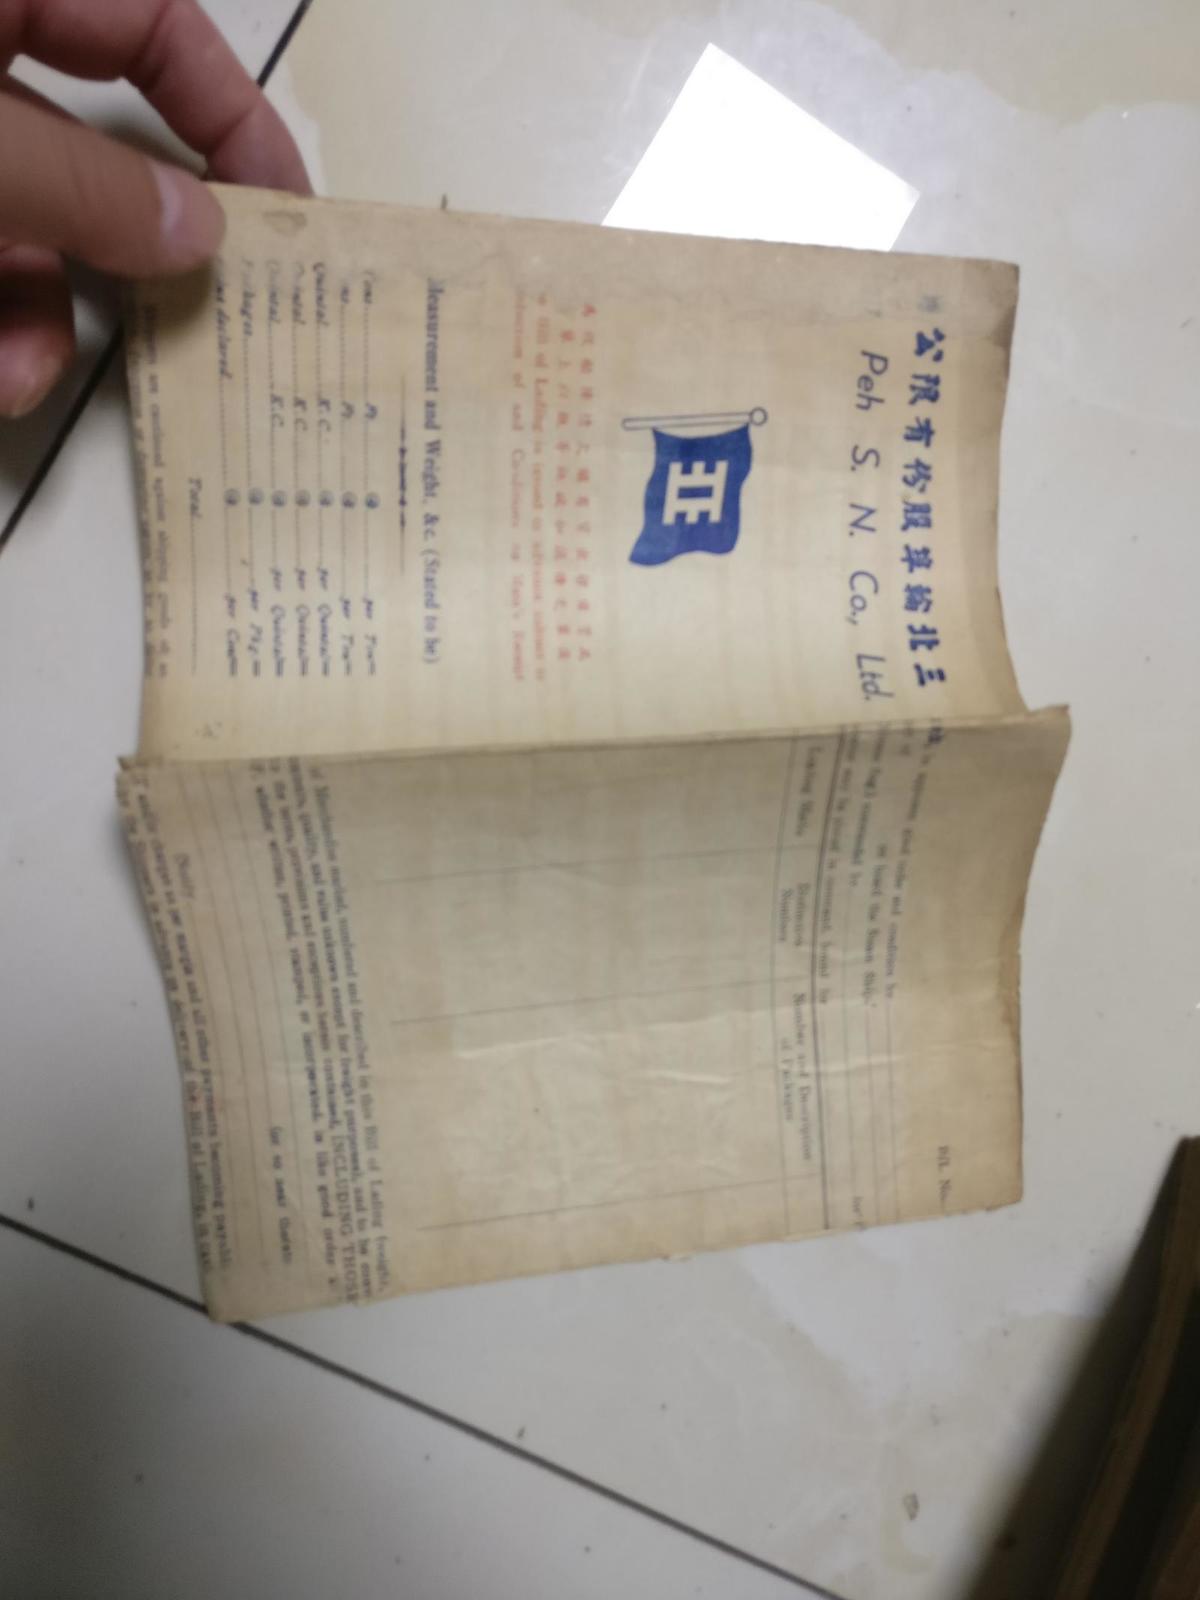 香畹楼忆语          32开复活书店发行，前后封面粘包了，第六页下角破损，估计民国版的